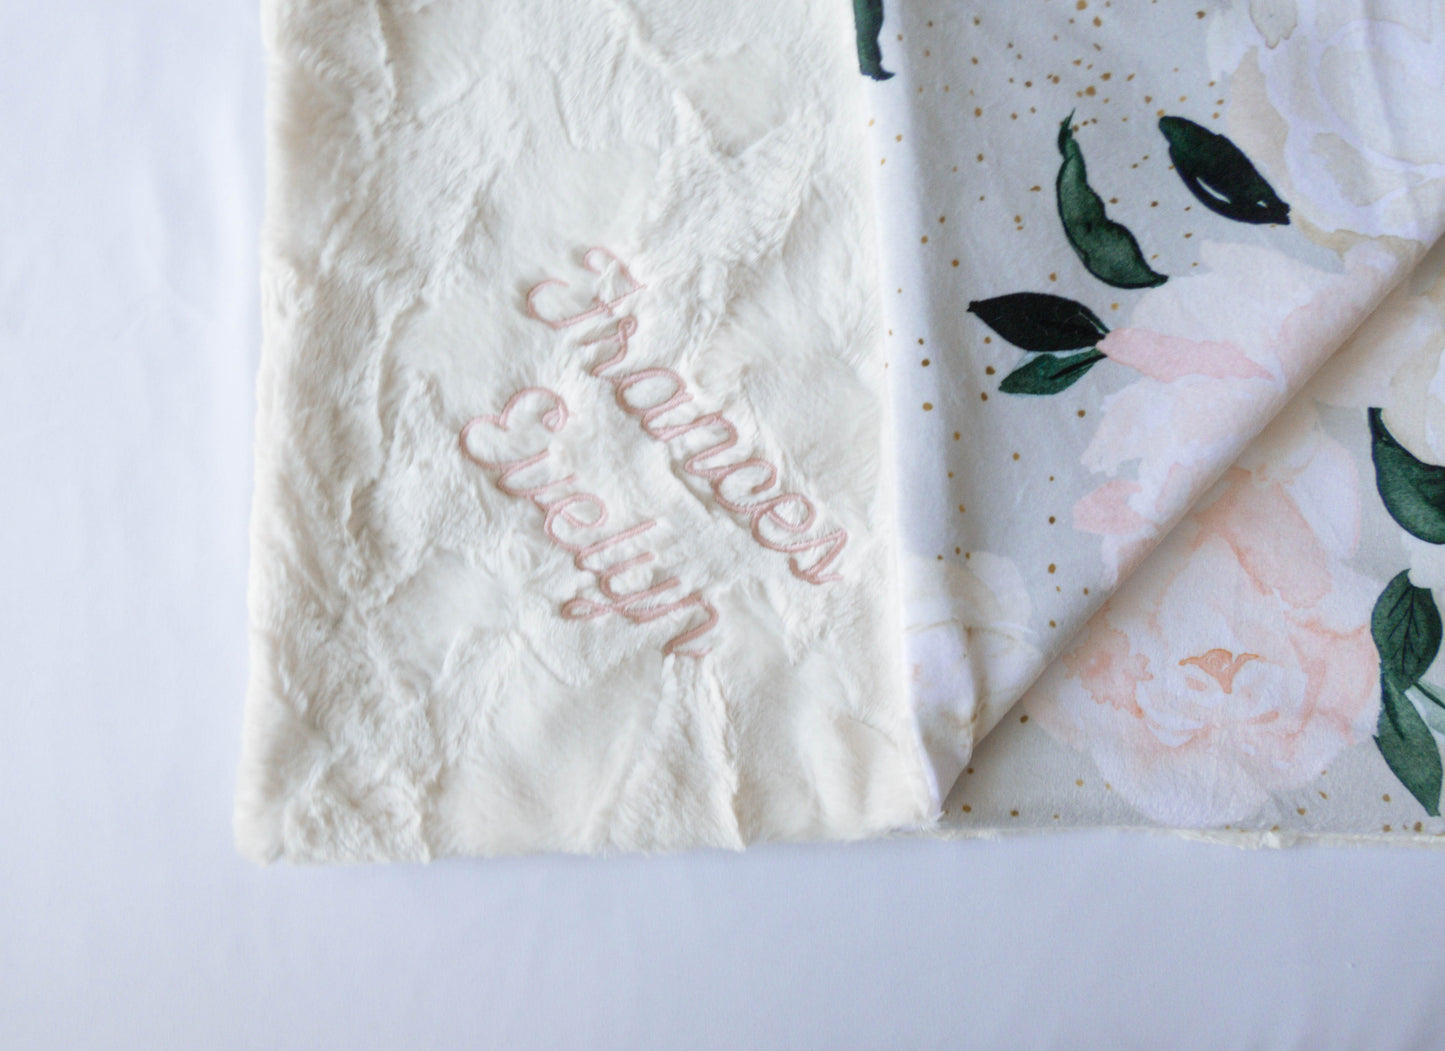 Vintage Blush Floral Baby Blanket